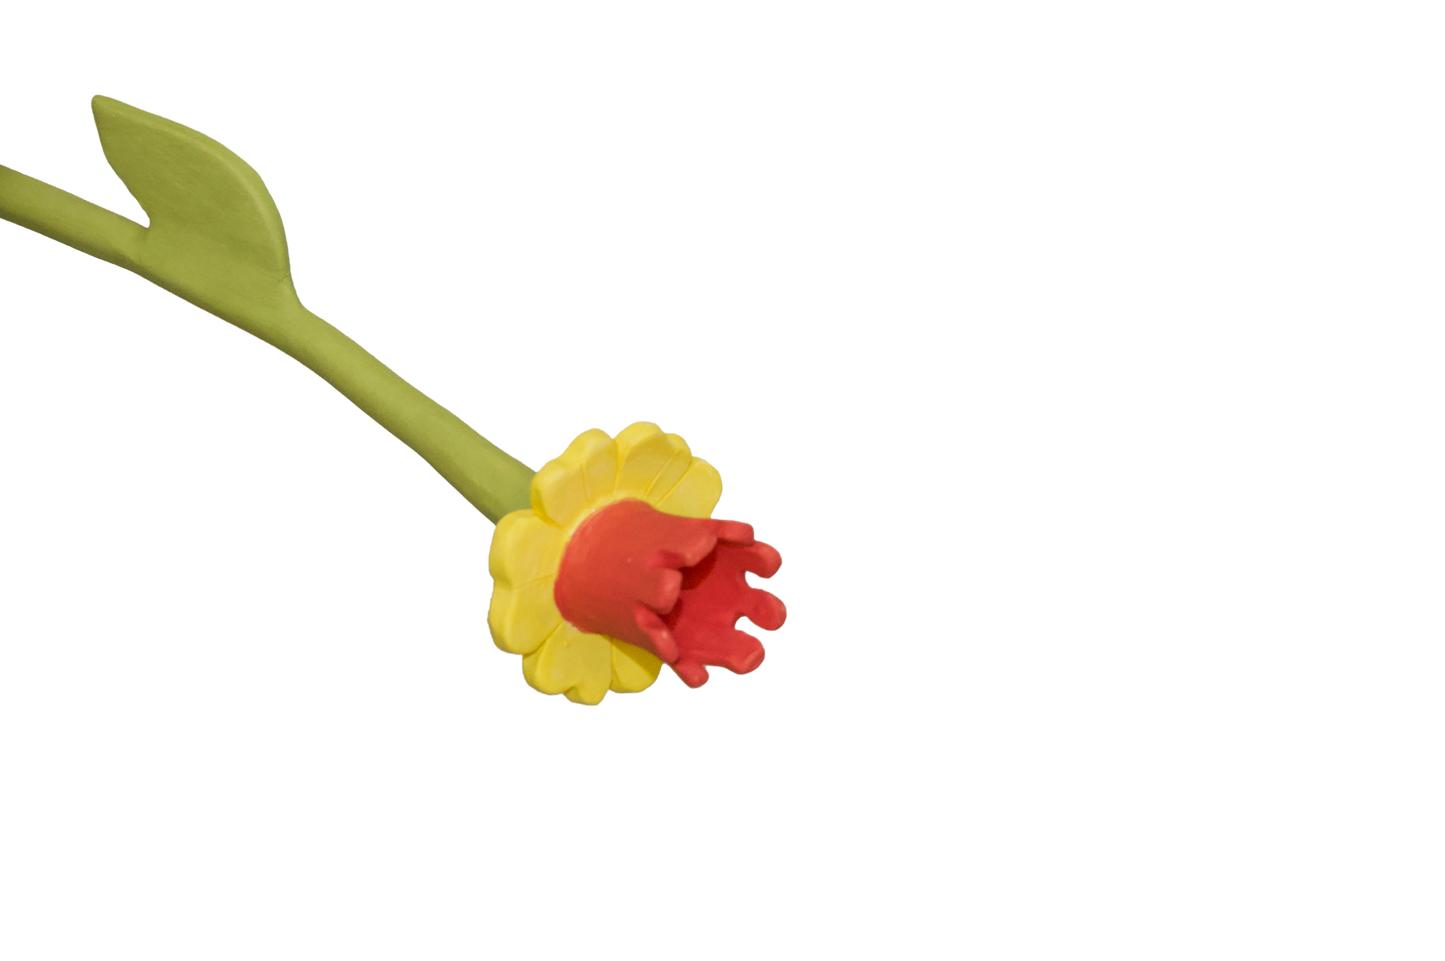 Daffodil Flower Stem